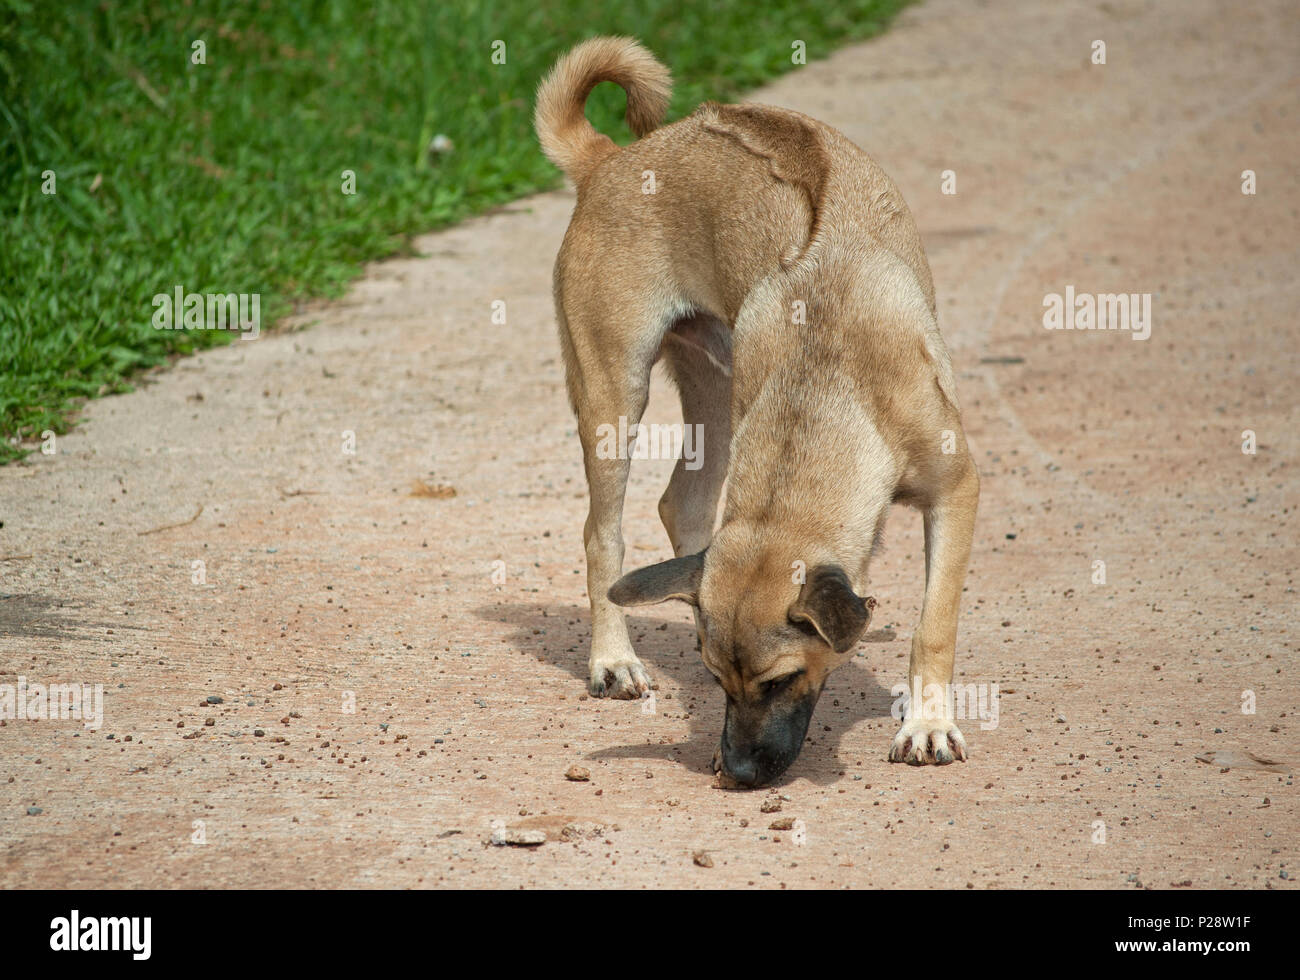 Thai Ridgeback dog (Canis) sniffing something unidentified on the ground Stock Photo